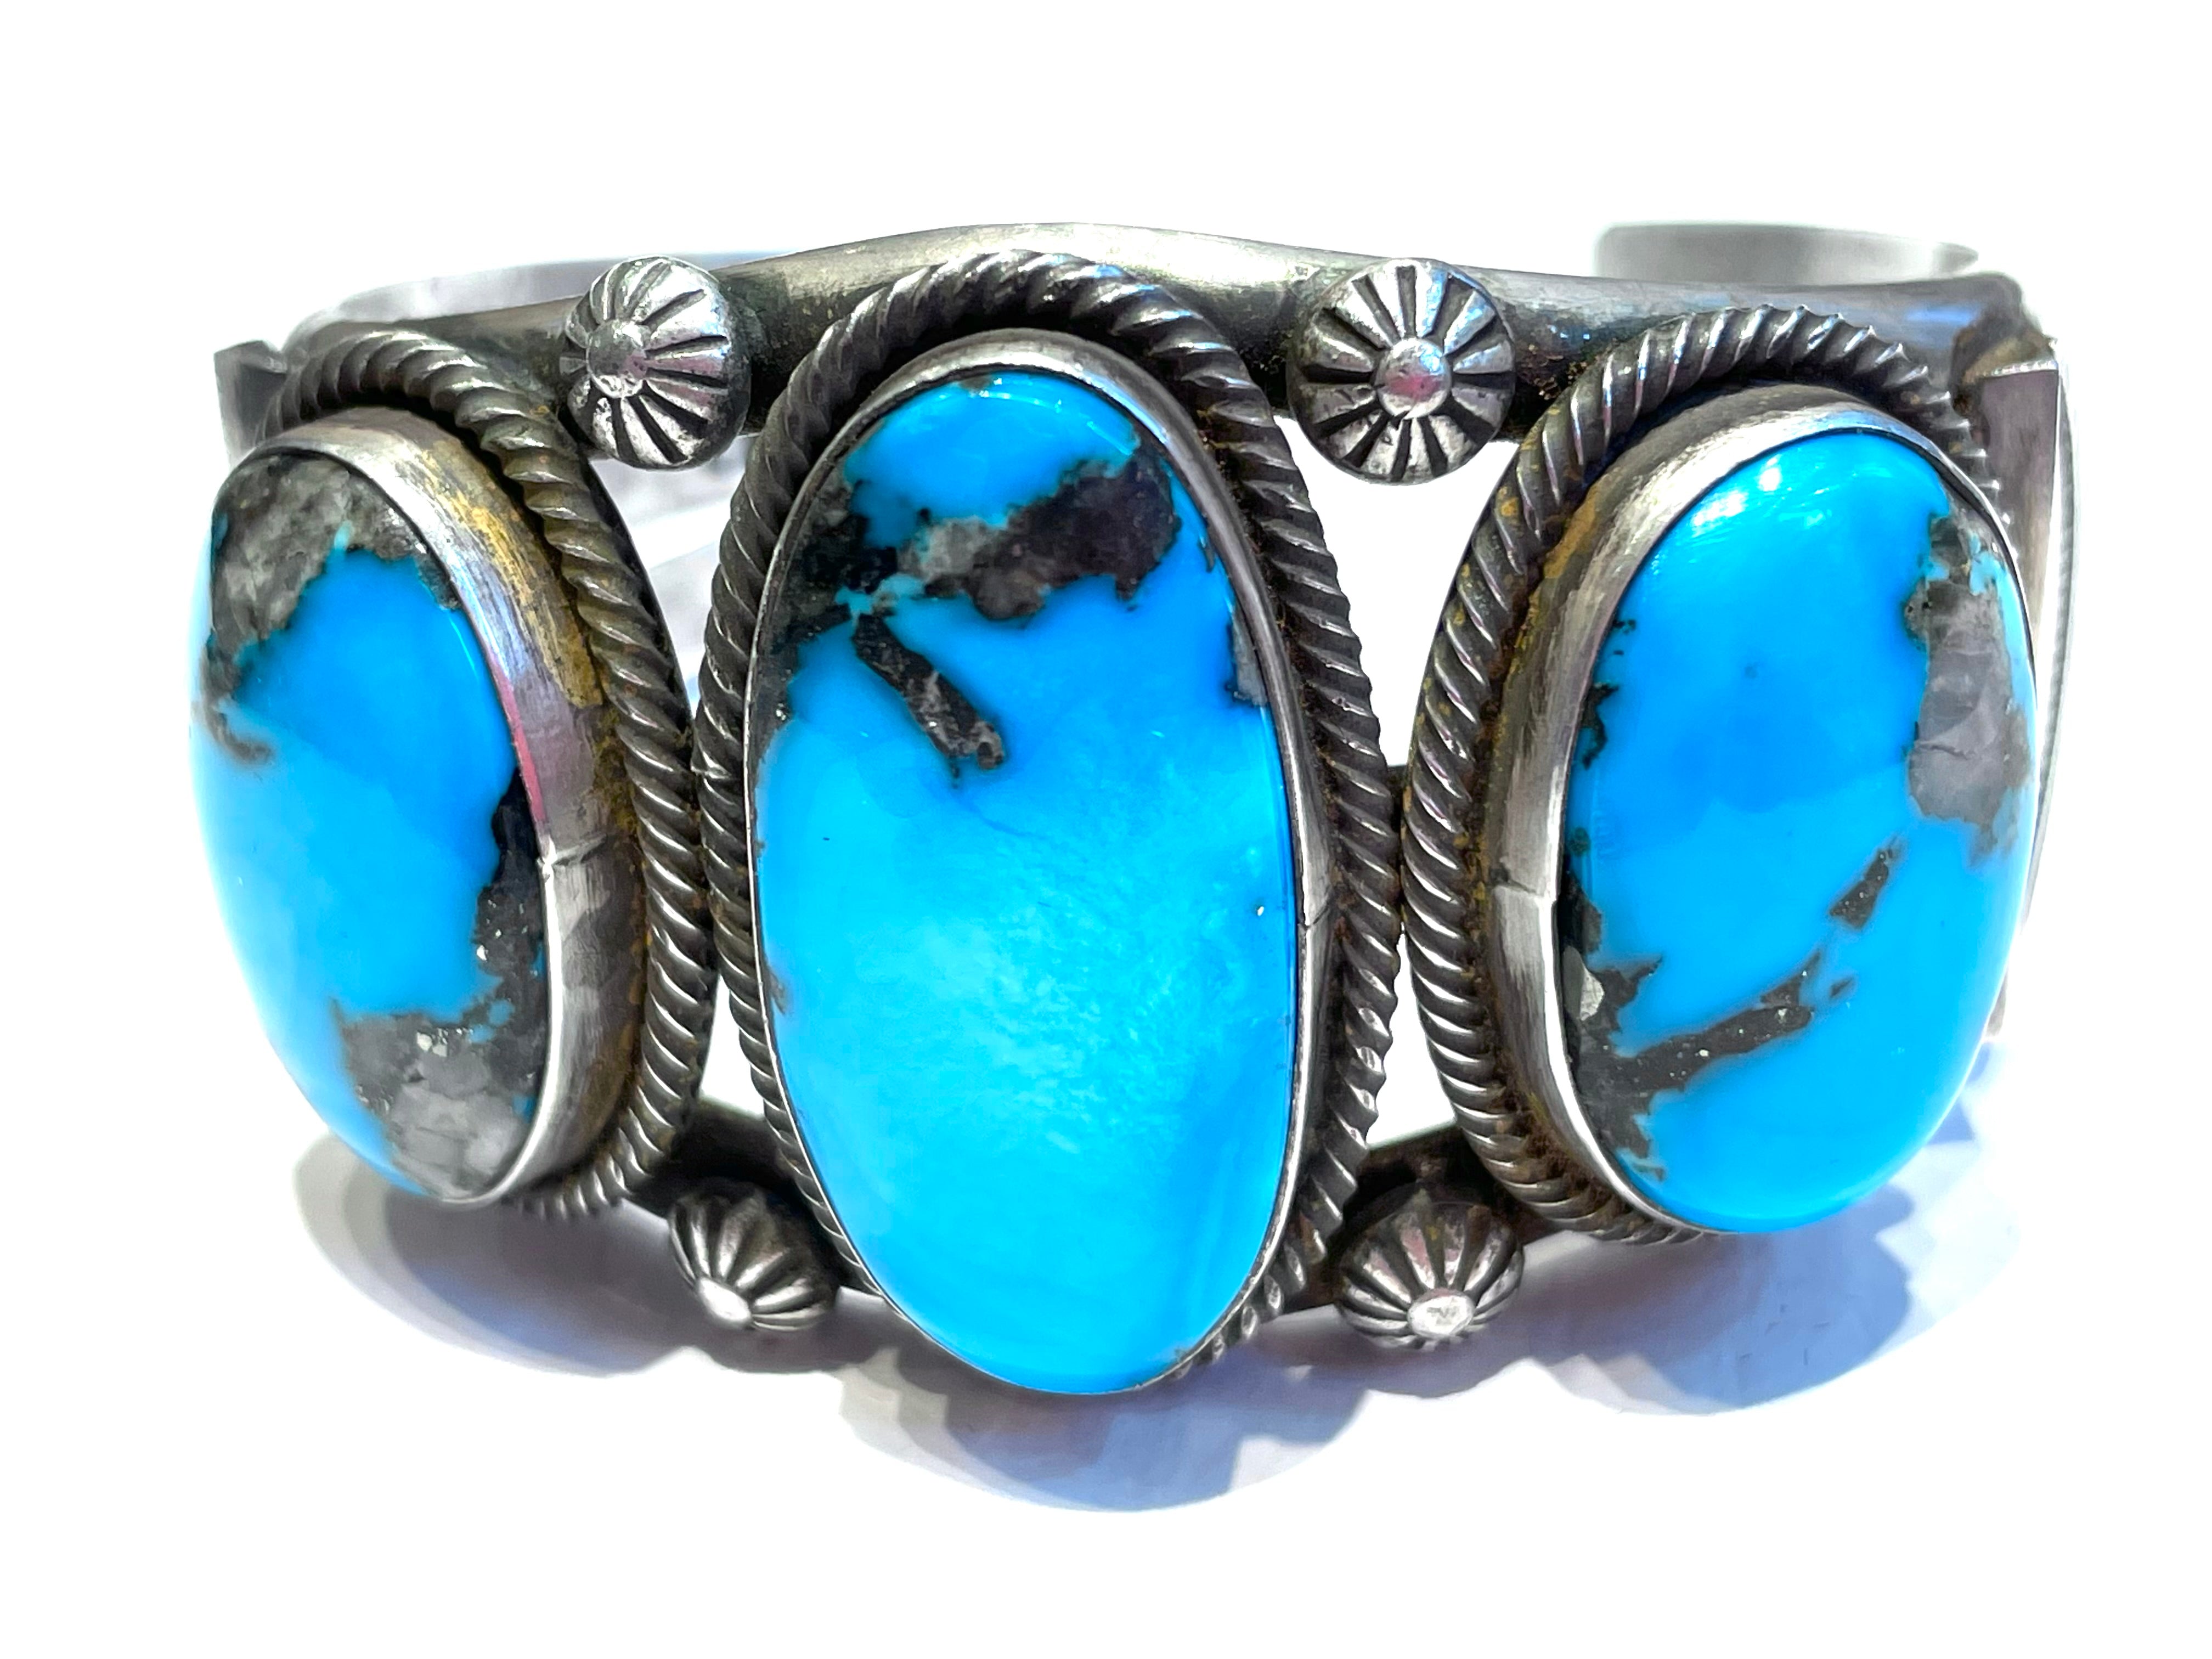 Navajo bracelet large stones